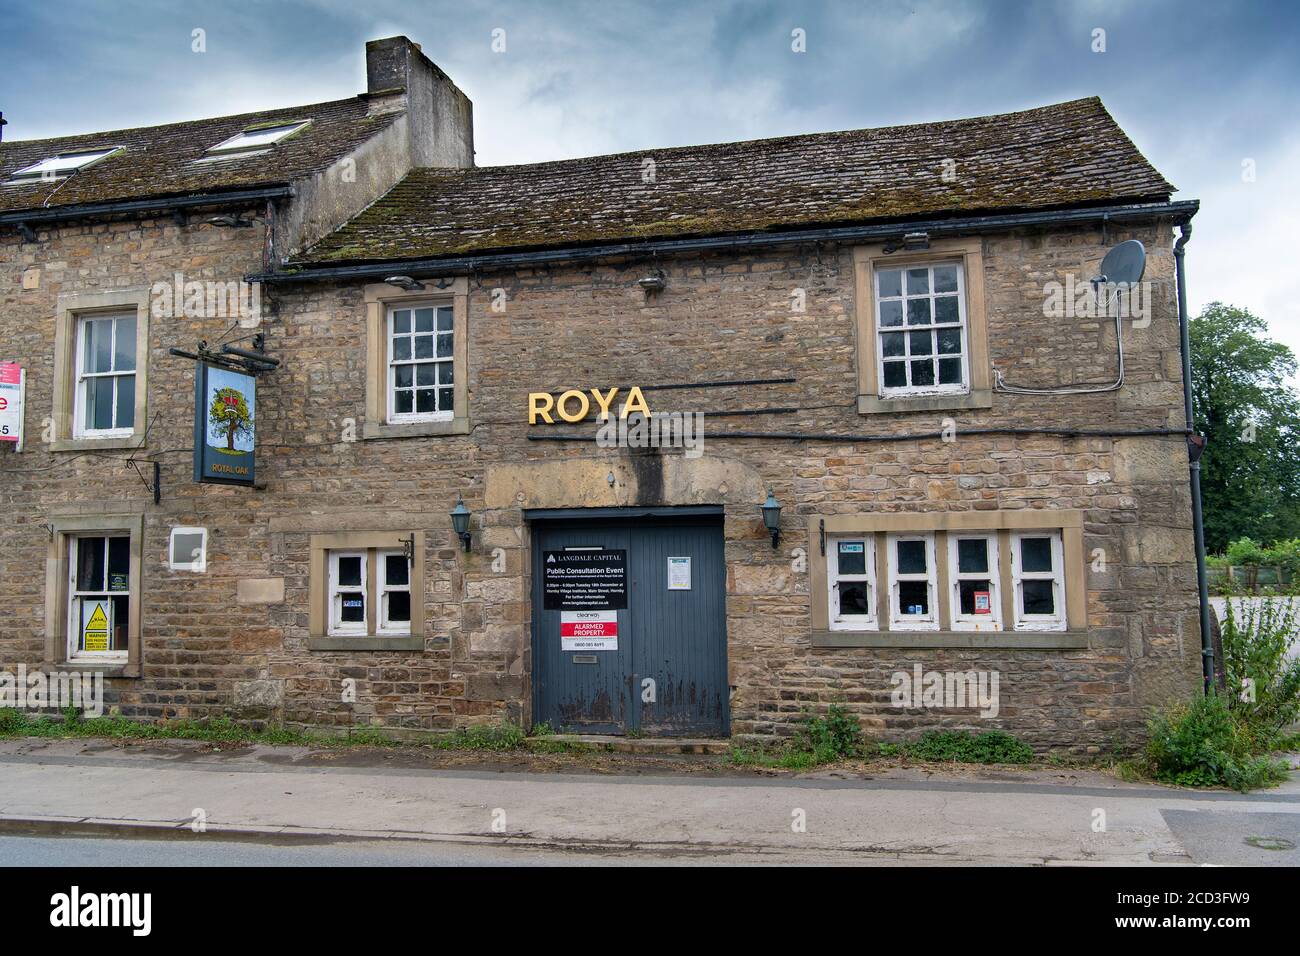 The Royal Oak, un pub rurale che è stato chiuso ed è in vendita, Hornby, Lancashire, Regno Unito. Foto Stock